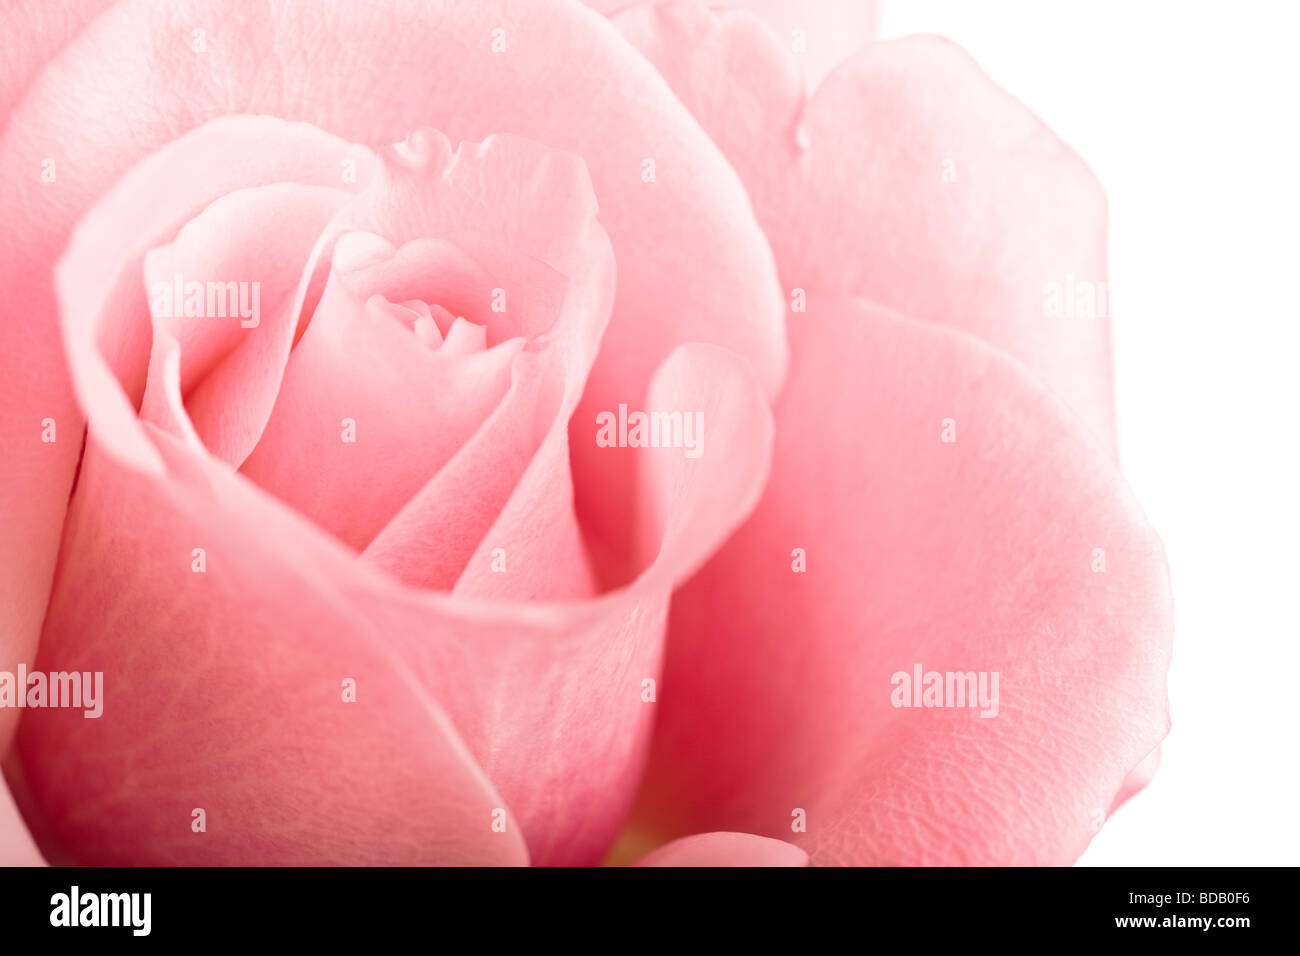 Rosa rosa closeup isolati su sfondo bianco Foto Stock